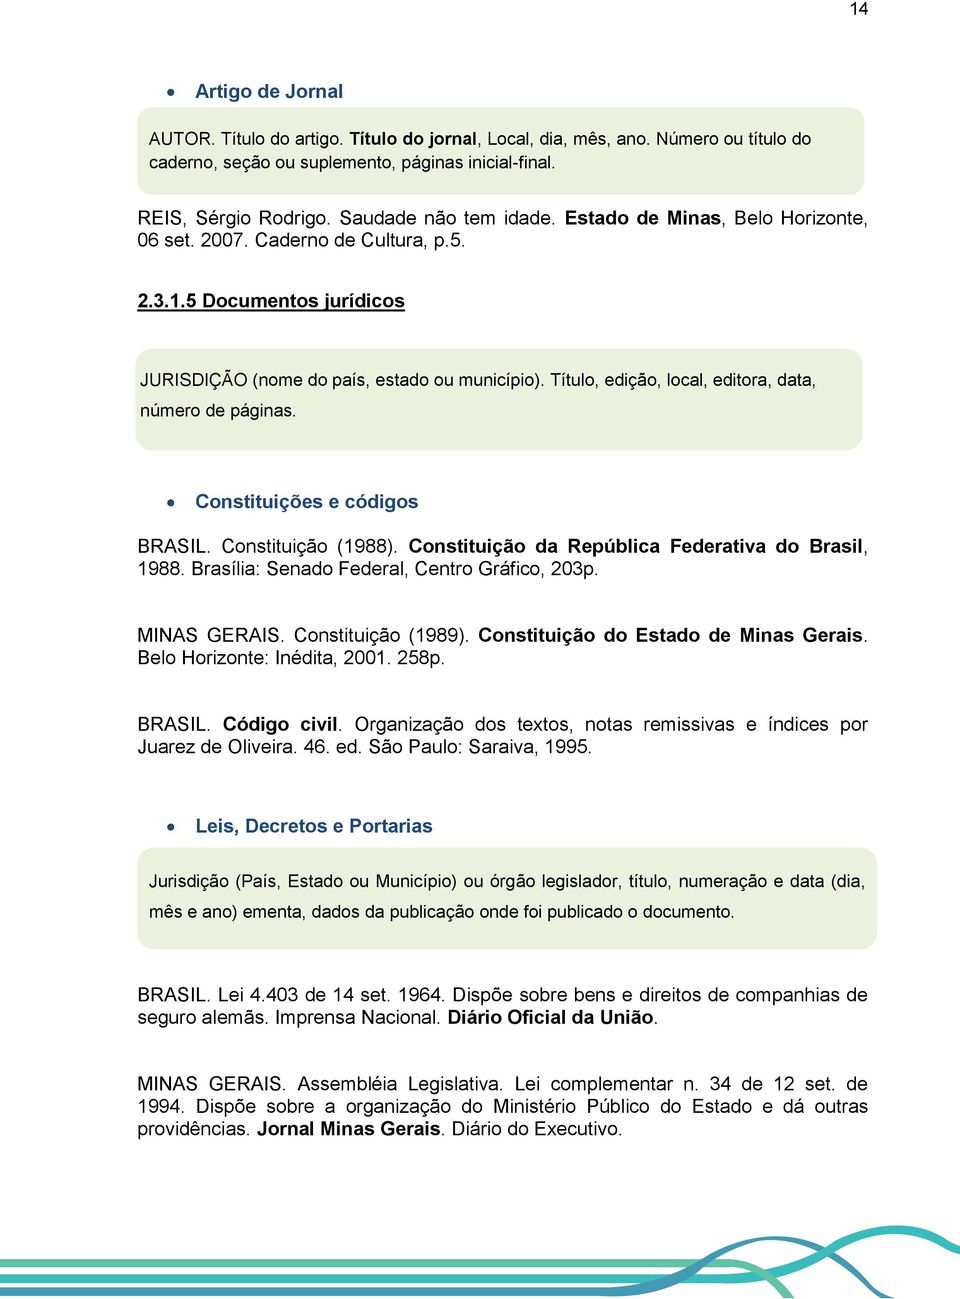 Título, edição, local, editora, data, número de páginas. Constituições e códigos BRASIL. Constituição (1988). Constituição da República Federativa do Brasil, 1988.